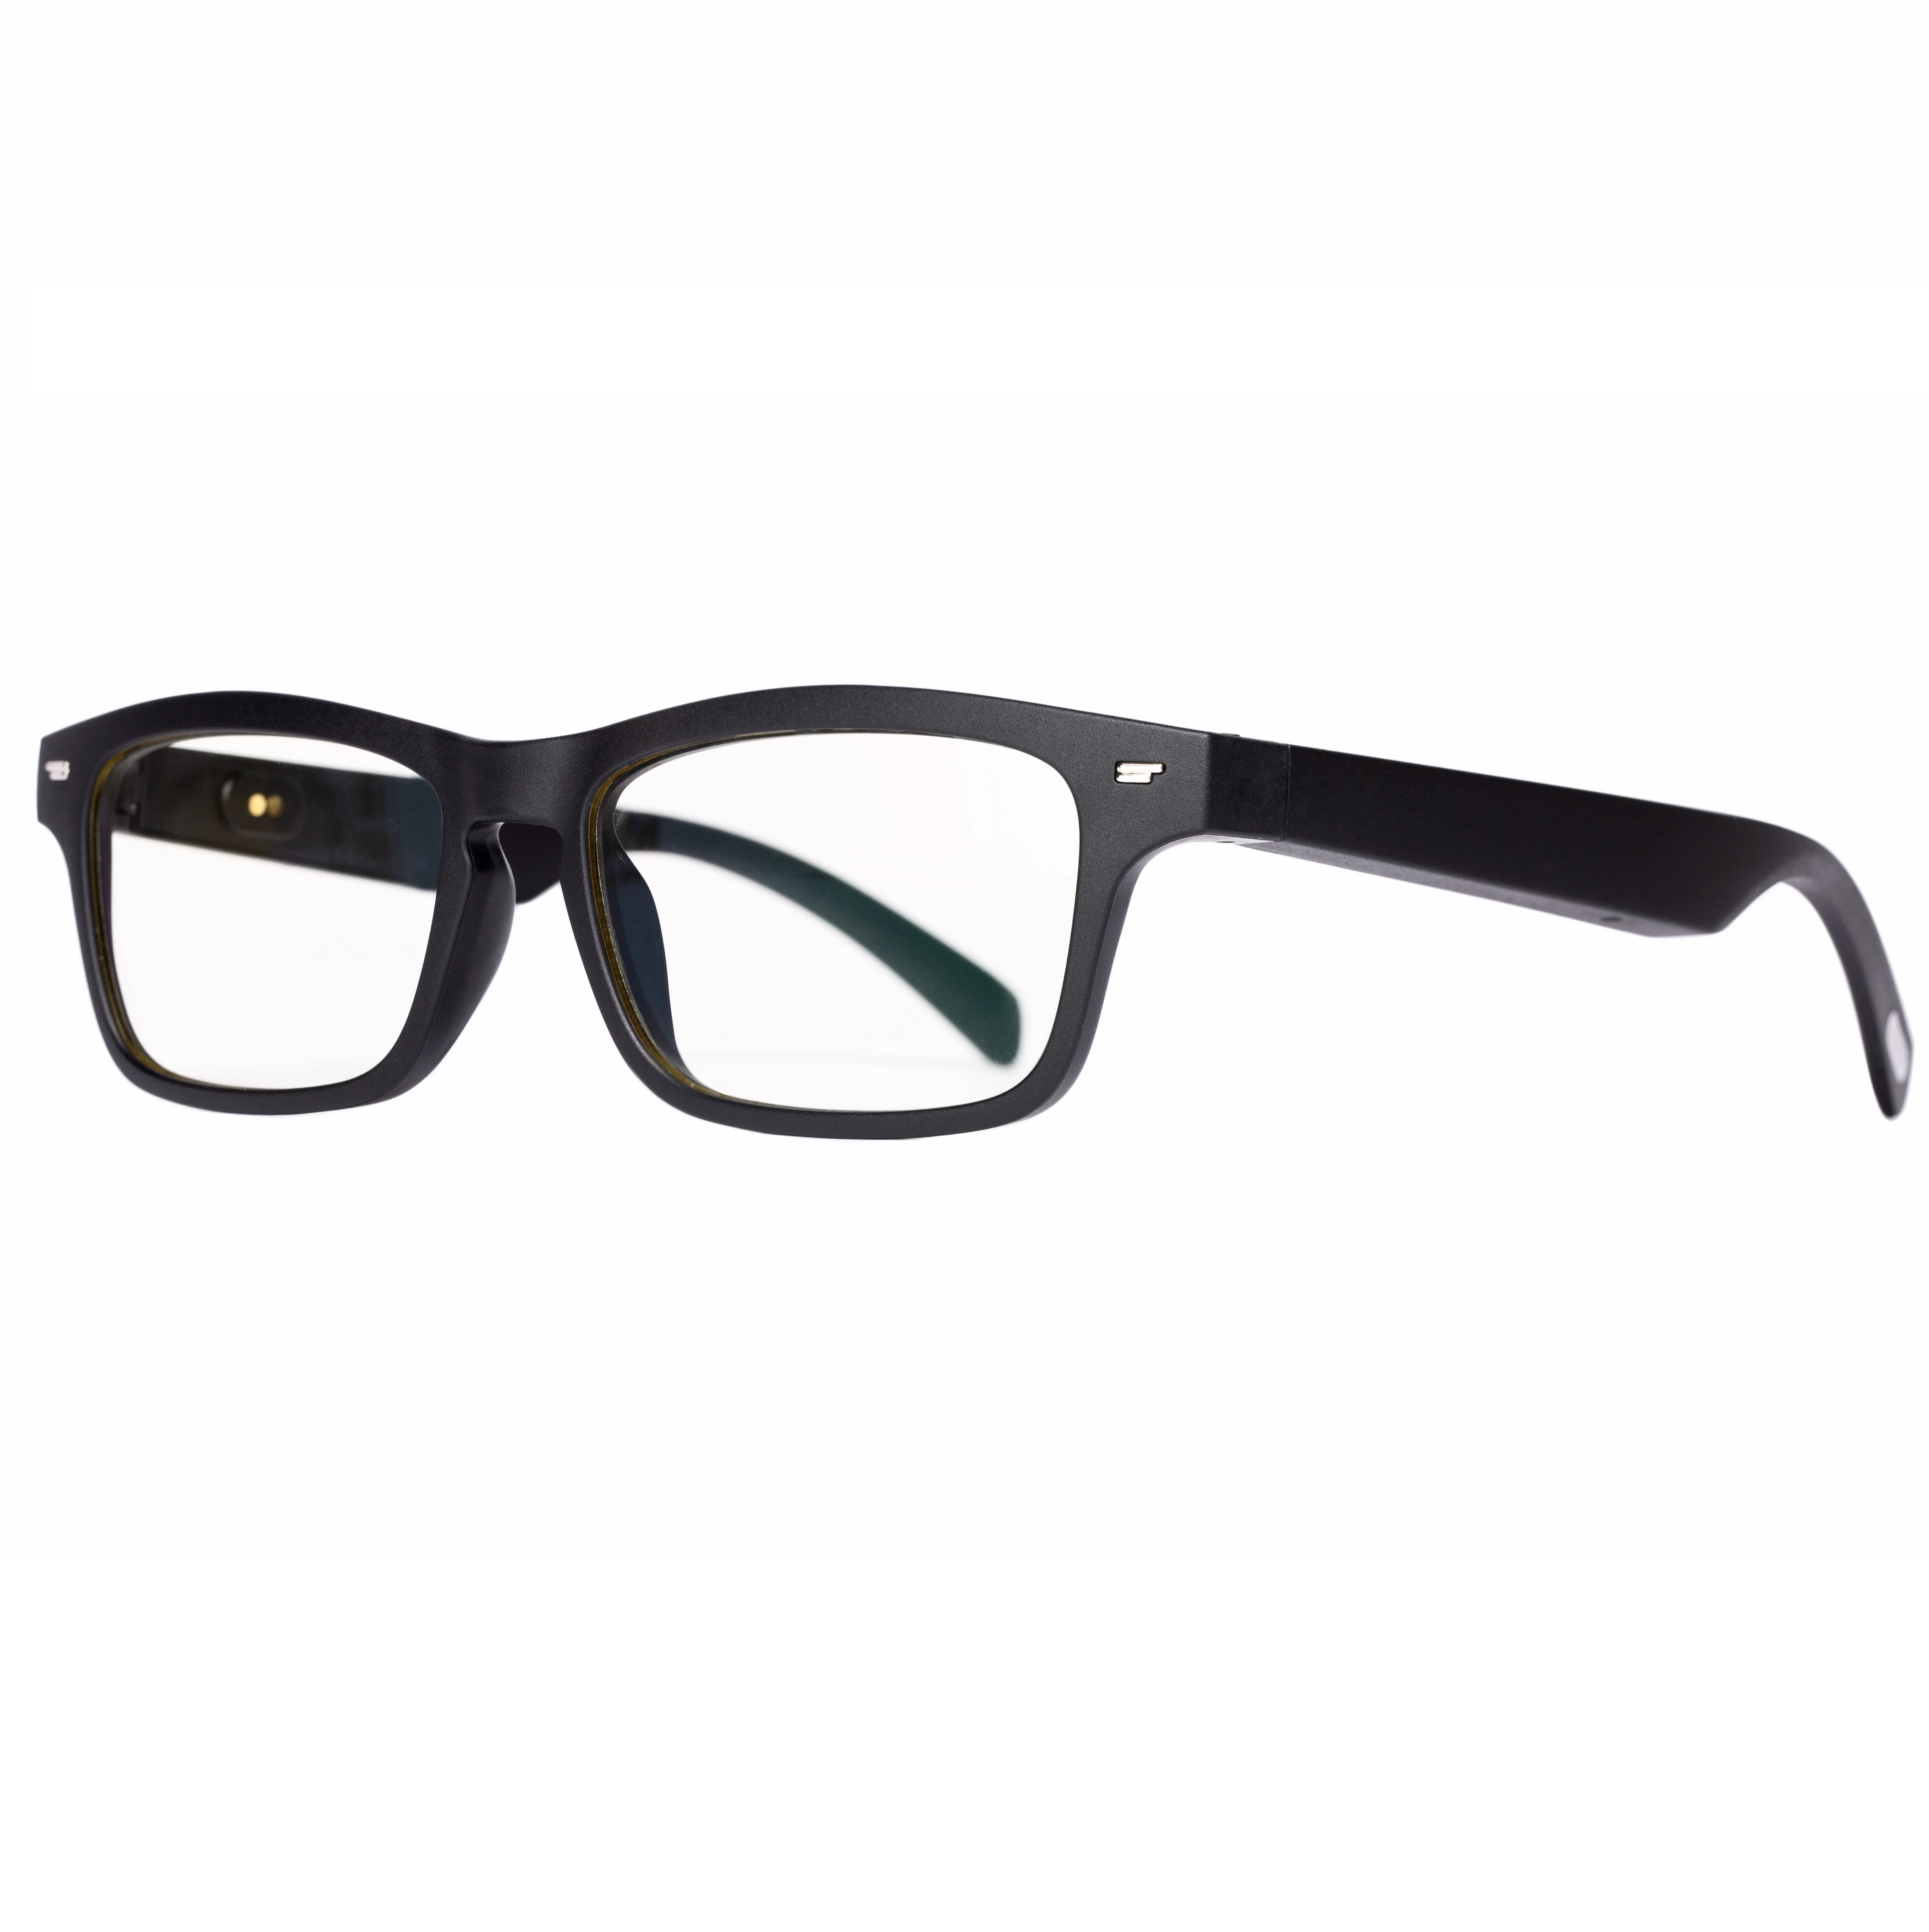 구매 새로운 블루투스 5.0 스마트 안경 음악 음성 통화 선글라스 IOS 안드로이드와 호환, 처방 렌즈 사용자 정의 지원